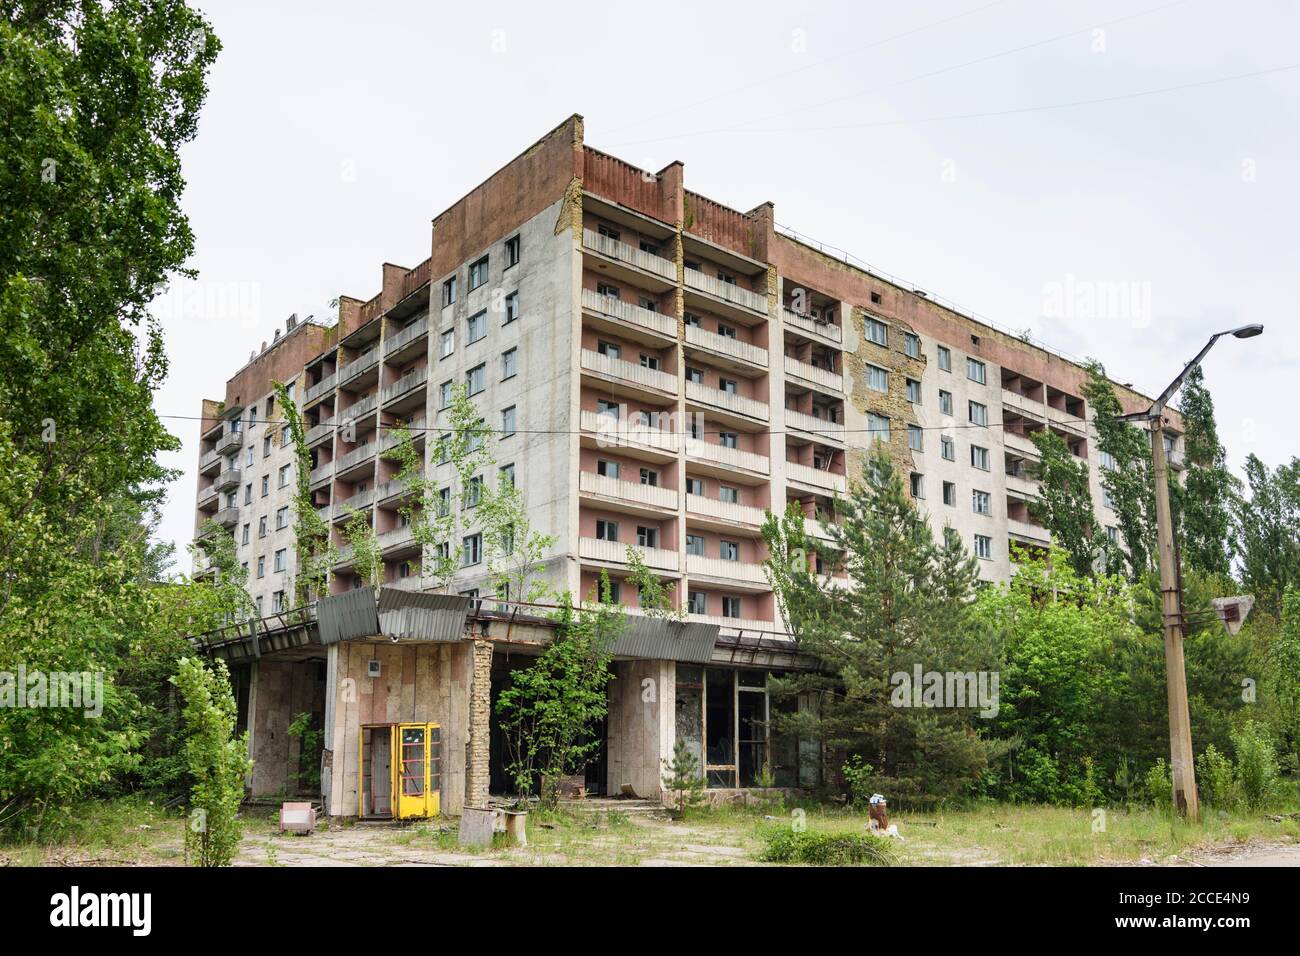 Pripyat (Prypiat), verlassene Wohnhäuser in Tschernobyl (Tschernobyl) Ausschlusszone, Kiew Oblast, Ukraine Stockfoto